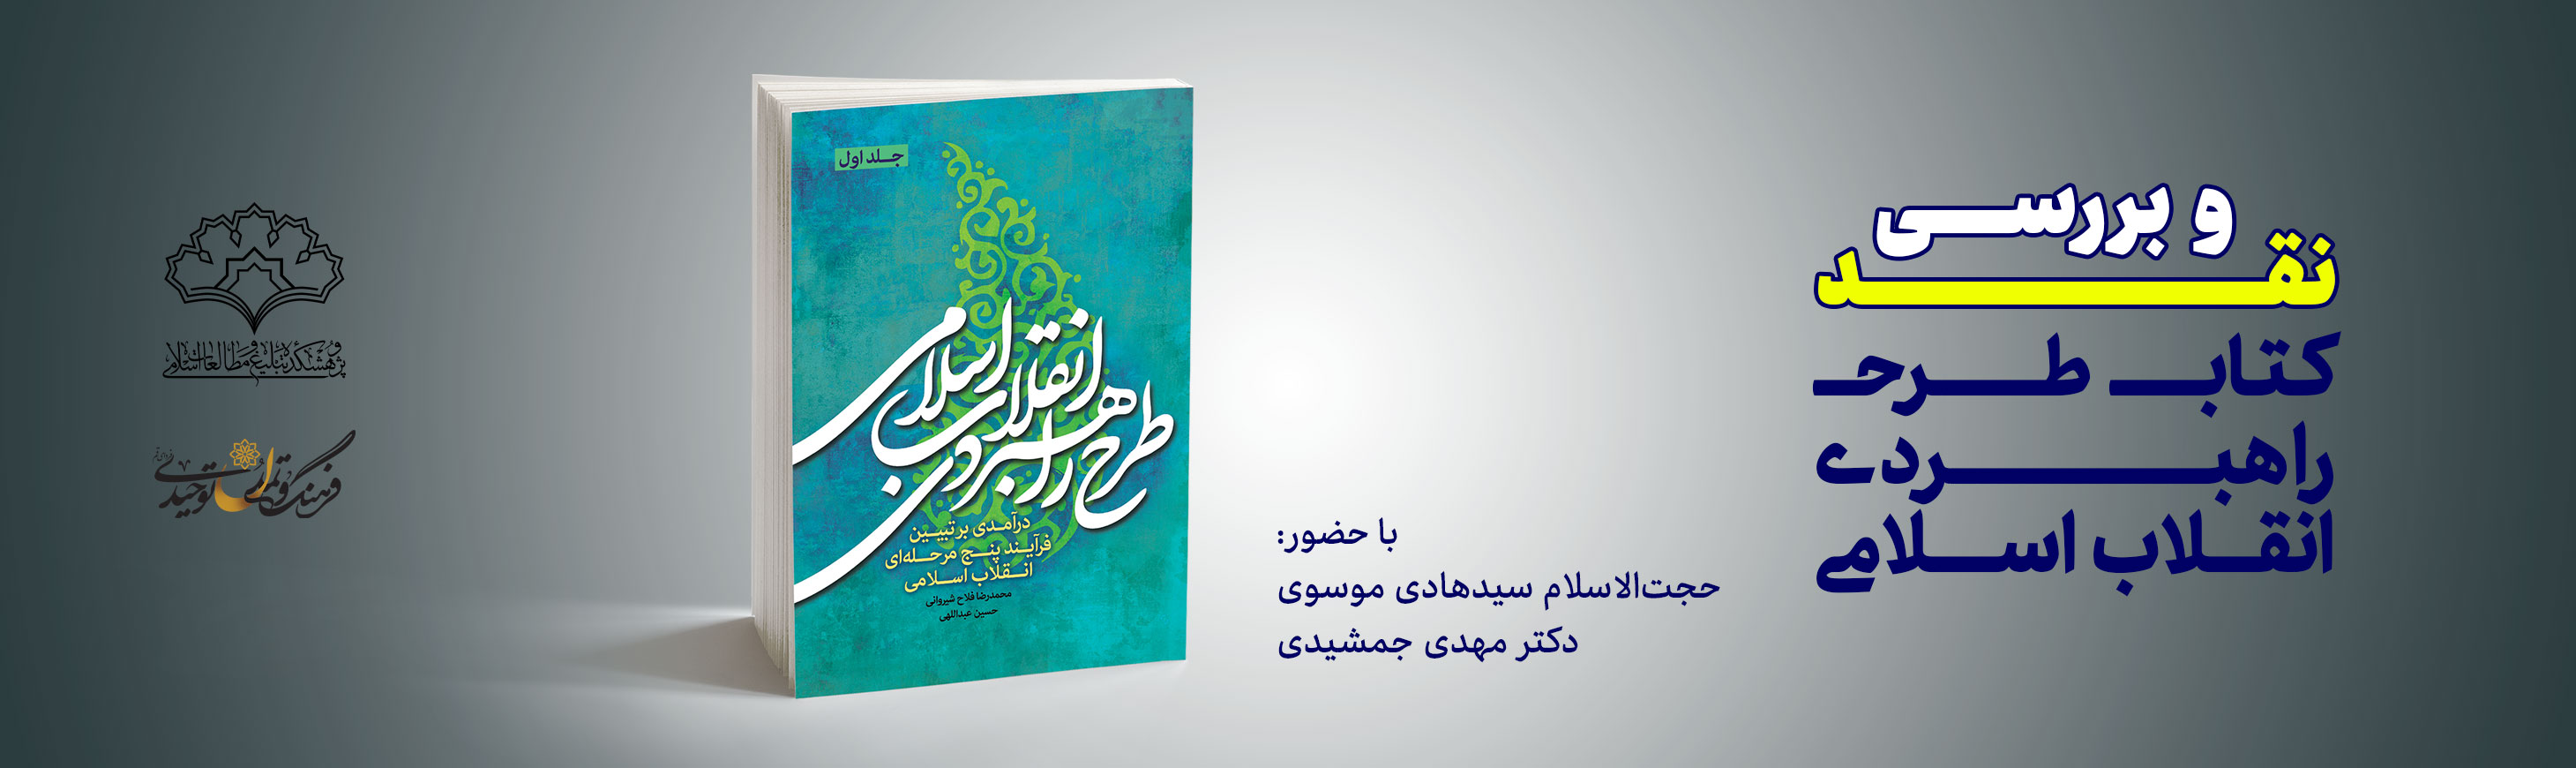 کتاب طرح راهبردی انقلاب اسلامی در بوته نقد و نظر